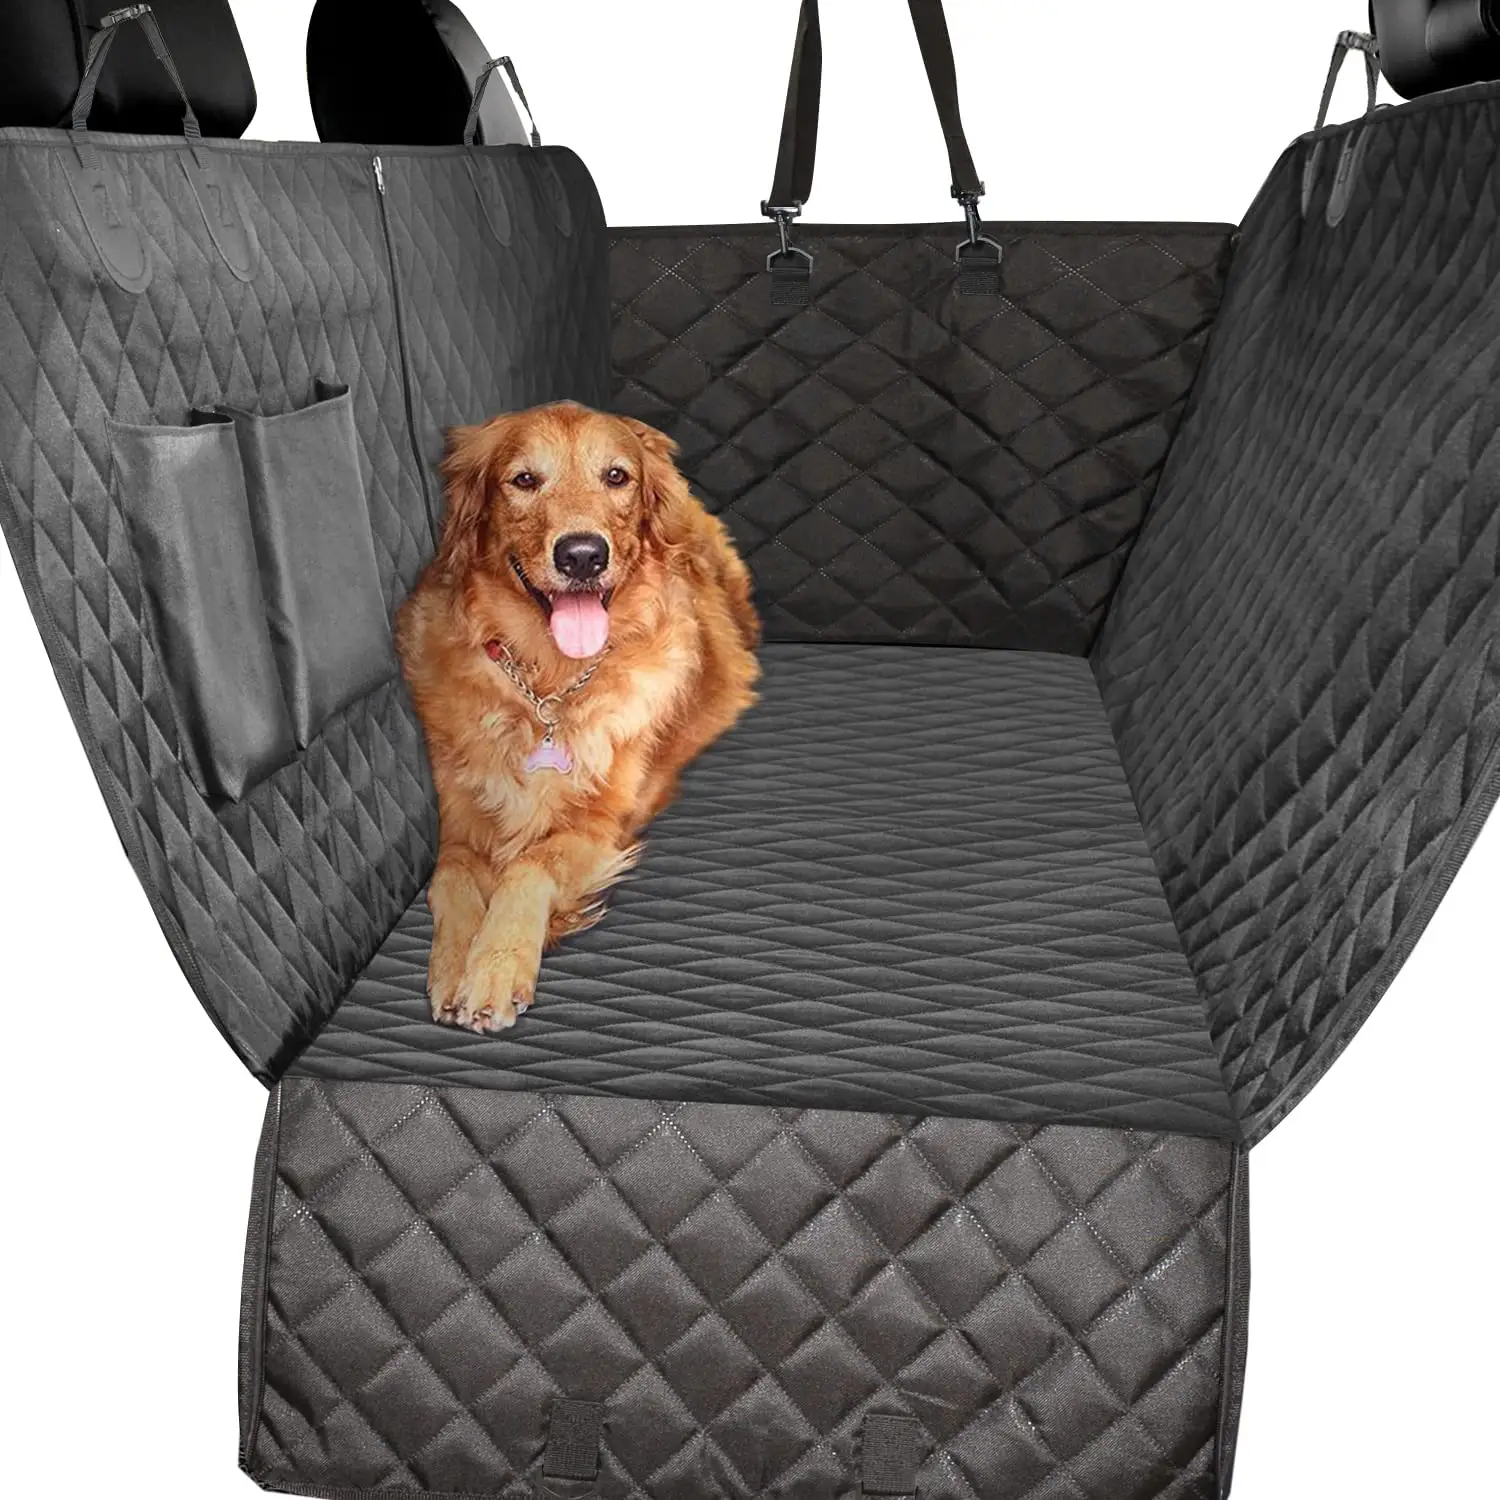 Fabriek Levering Antislip Gewatteerde Huisdier Reismatten Hangmat Waterdichte Eco-Vriendelijke Hond Huisdier Autostoel Hoes Voor Auto